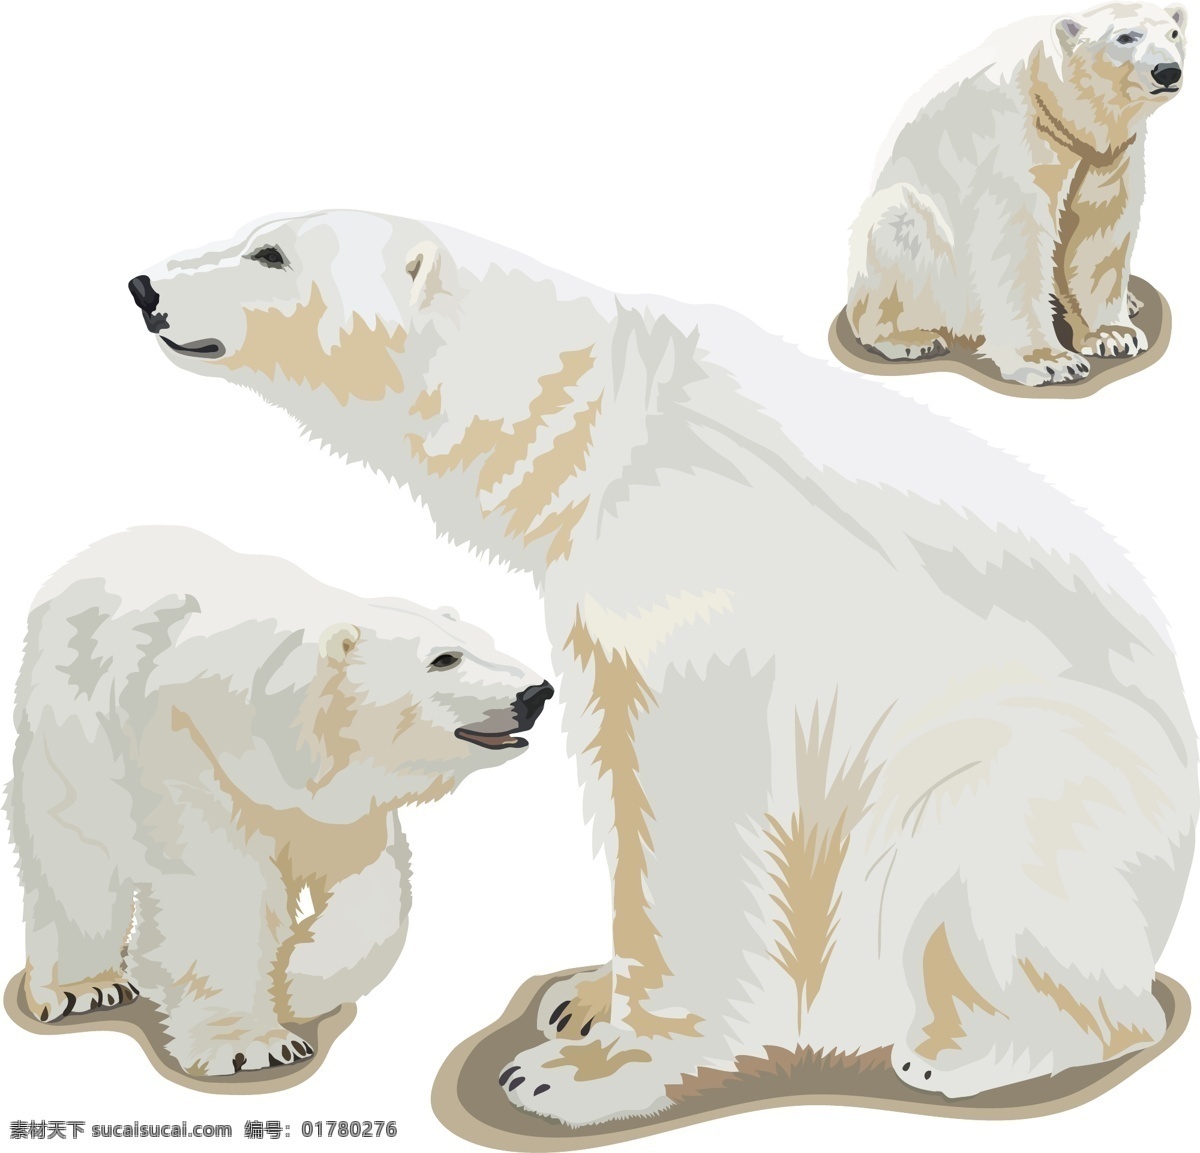 北极熊 小熊 熊 白熊 灰熊 动物 棕熊 可爱动物 野生动物 生物世界